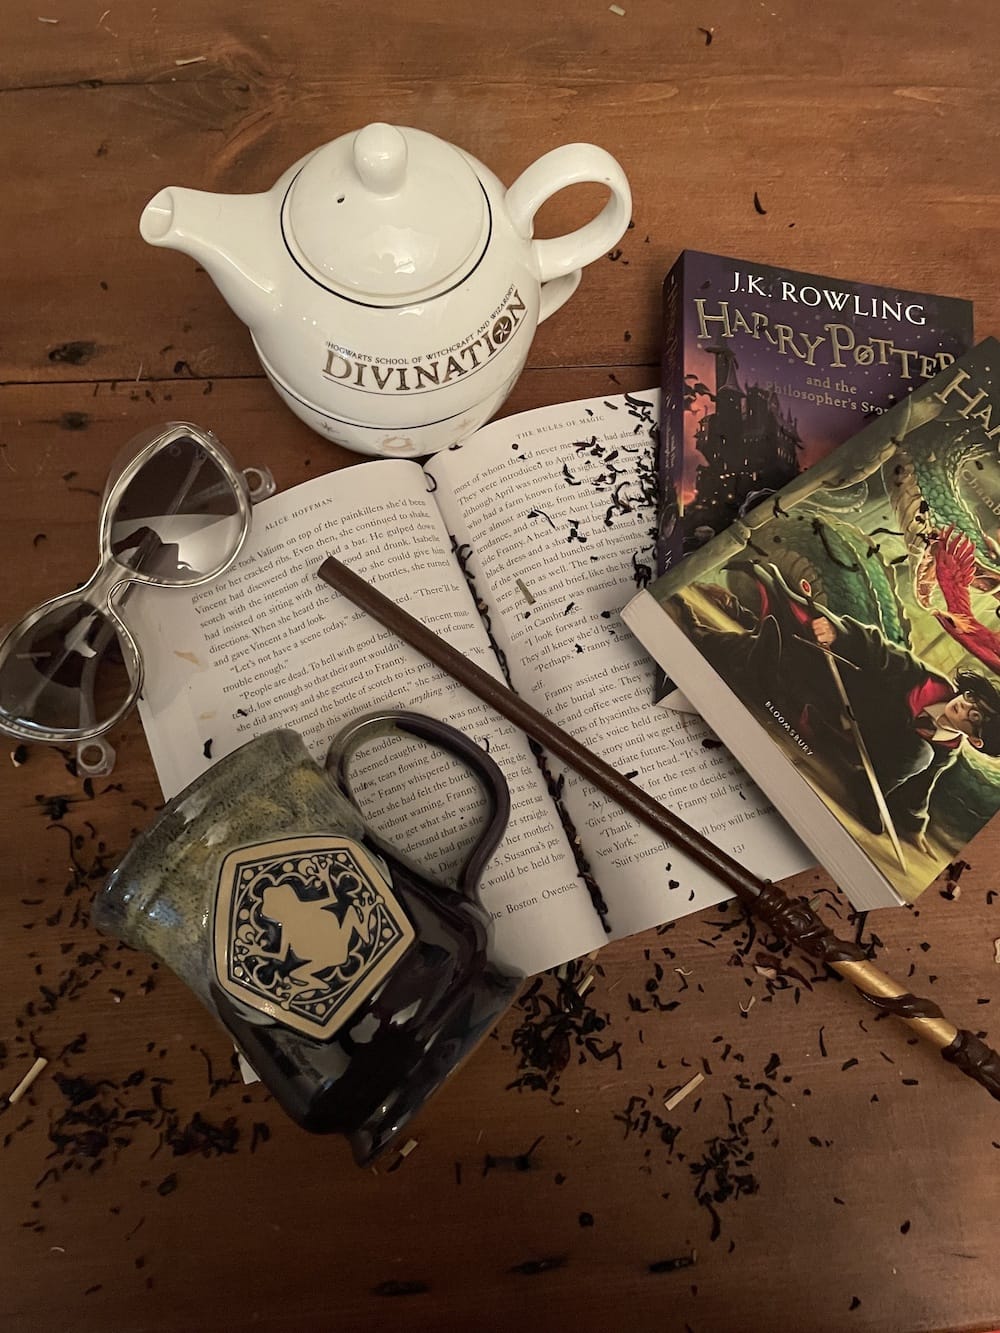 Book, tea, Harry Potter books